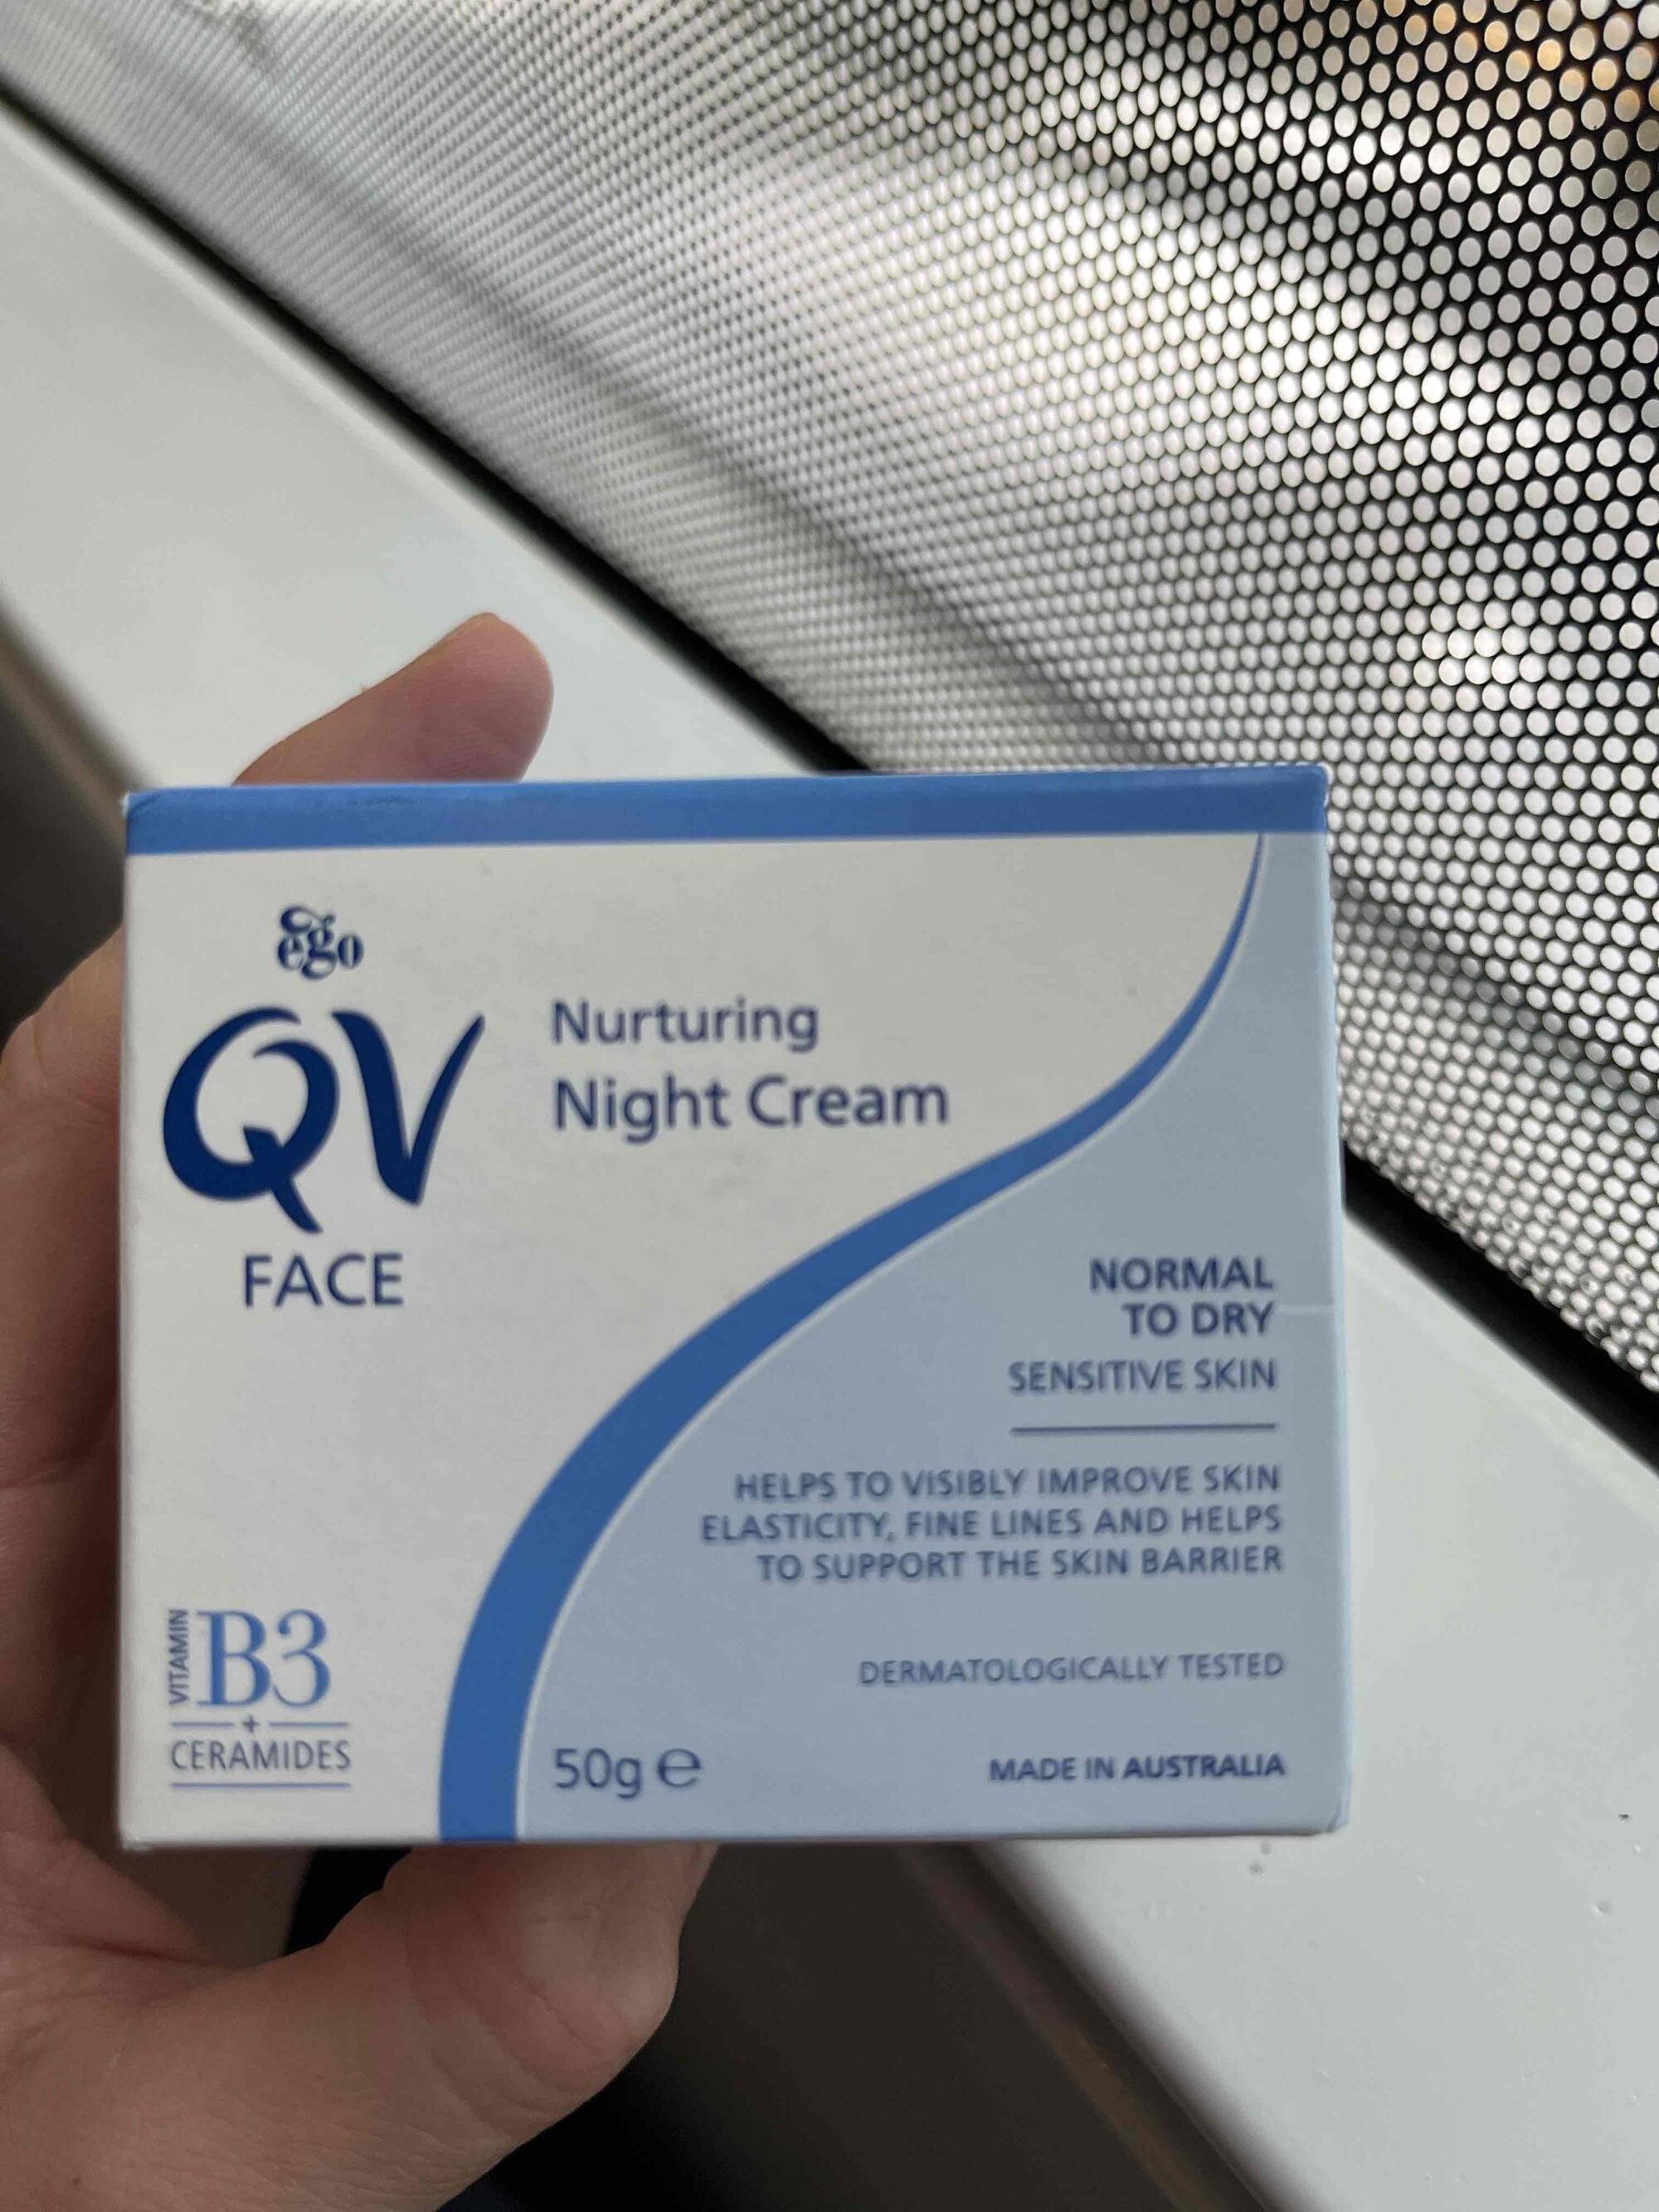 EGO - QV face - Nurturing night cream